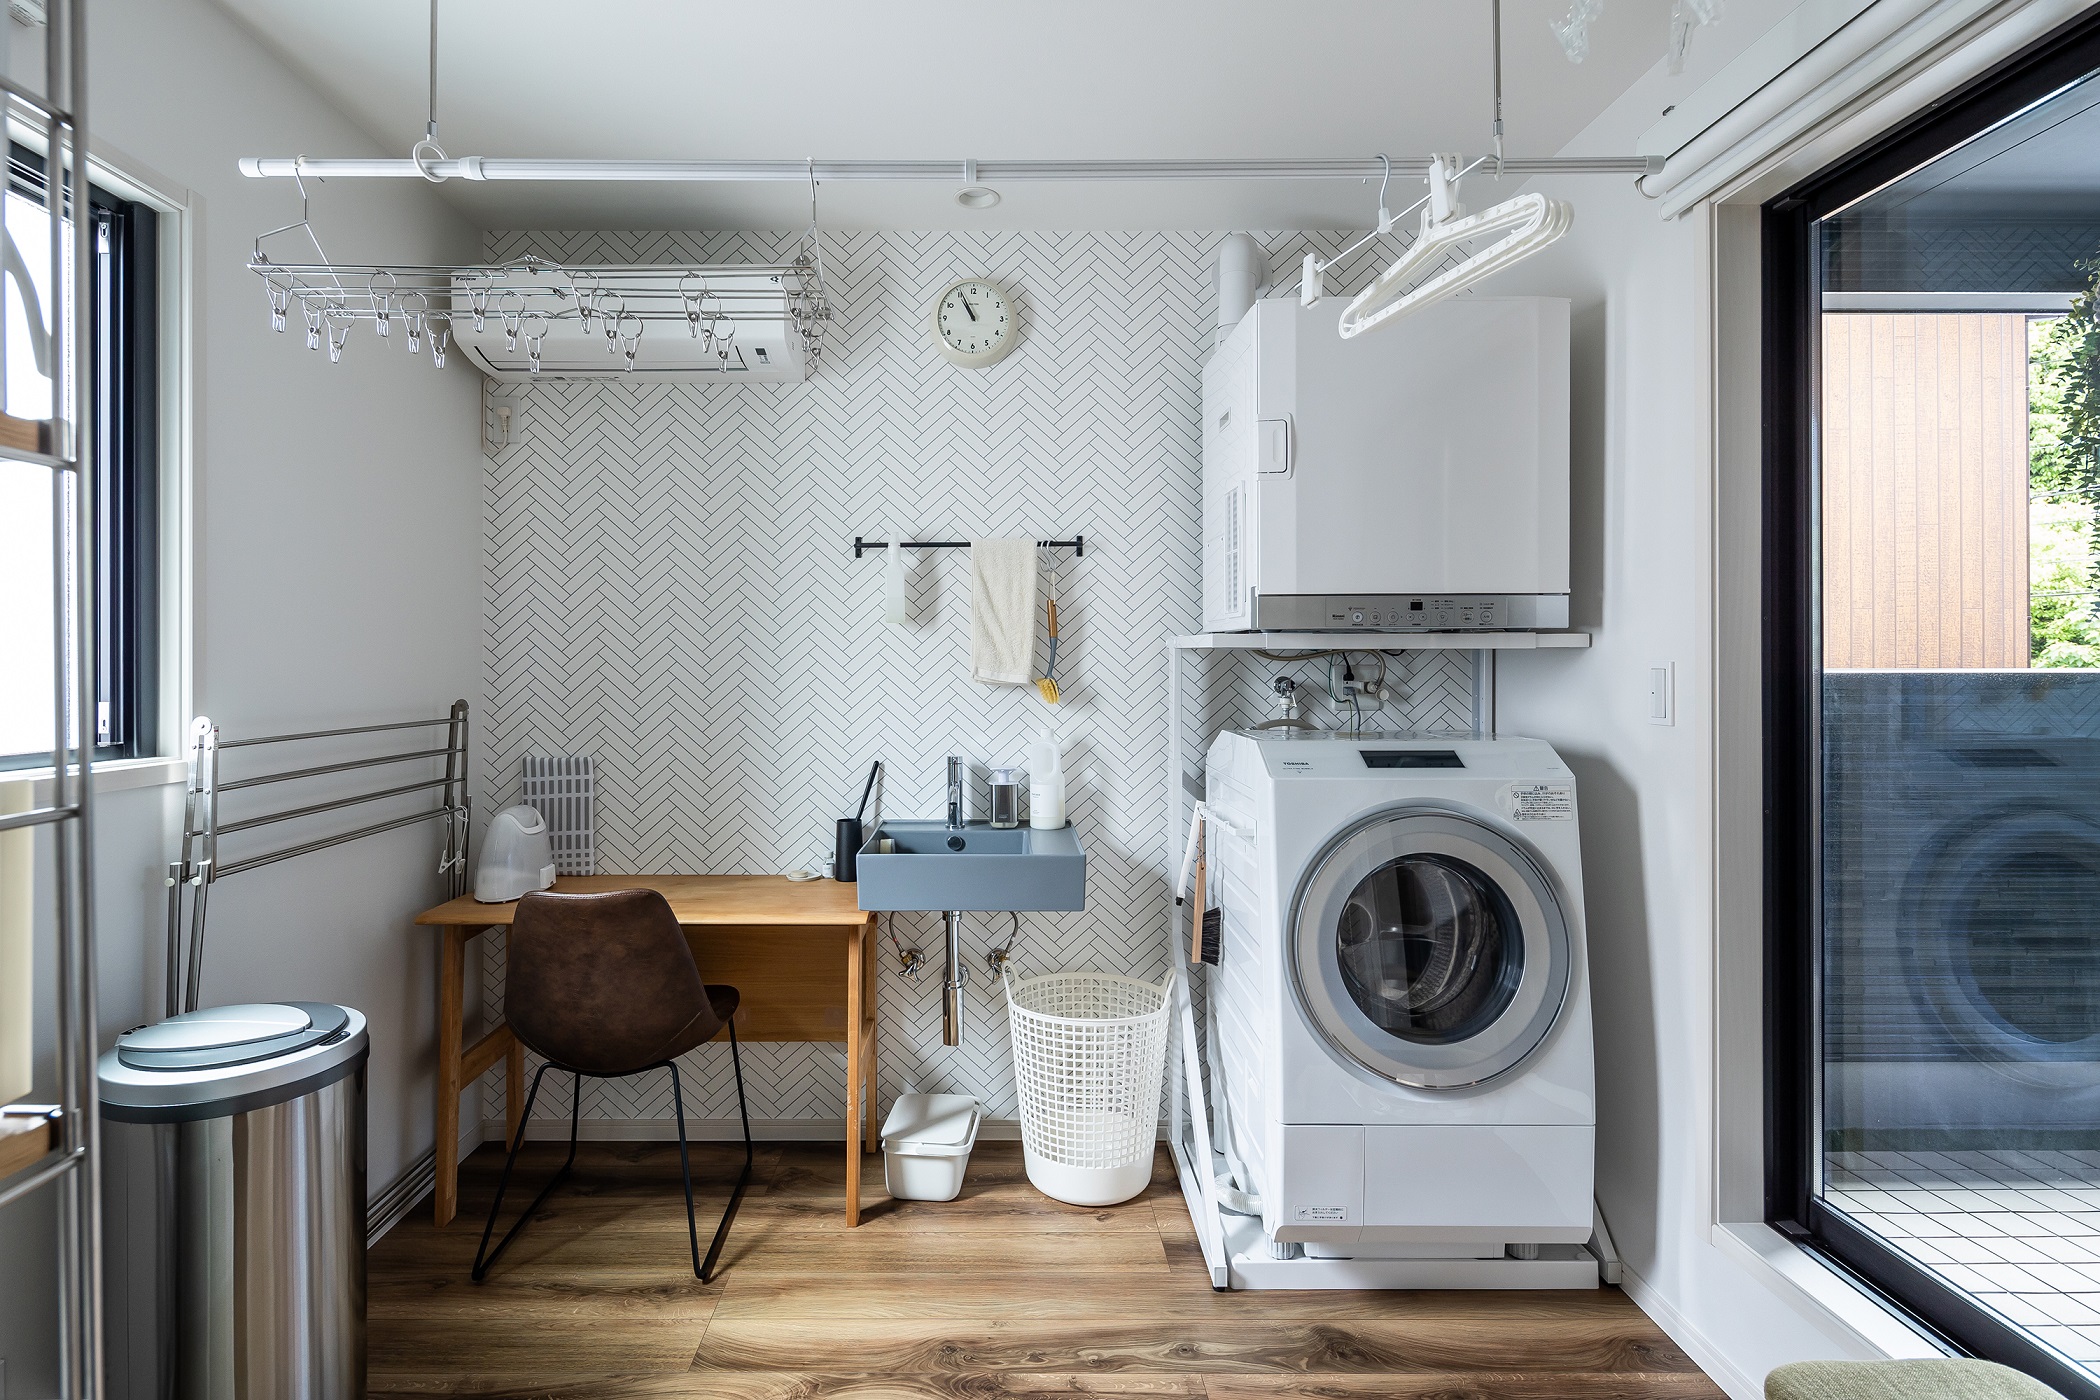 バルコニー横にある4.5帖のランドリールームには洗濯機、乾燥機、洗面器、家事用デスク、物干しがひとまとめに設置され、洗濯にかかる時間や手間を短縮してくれます。